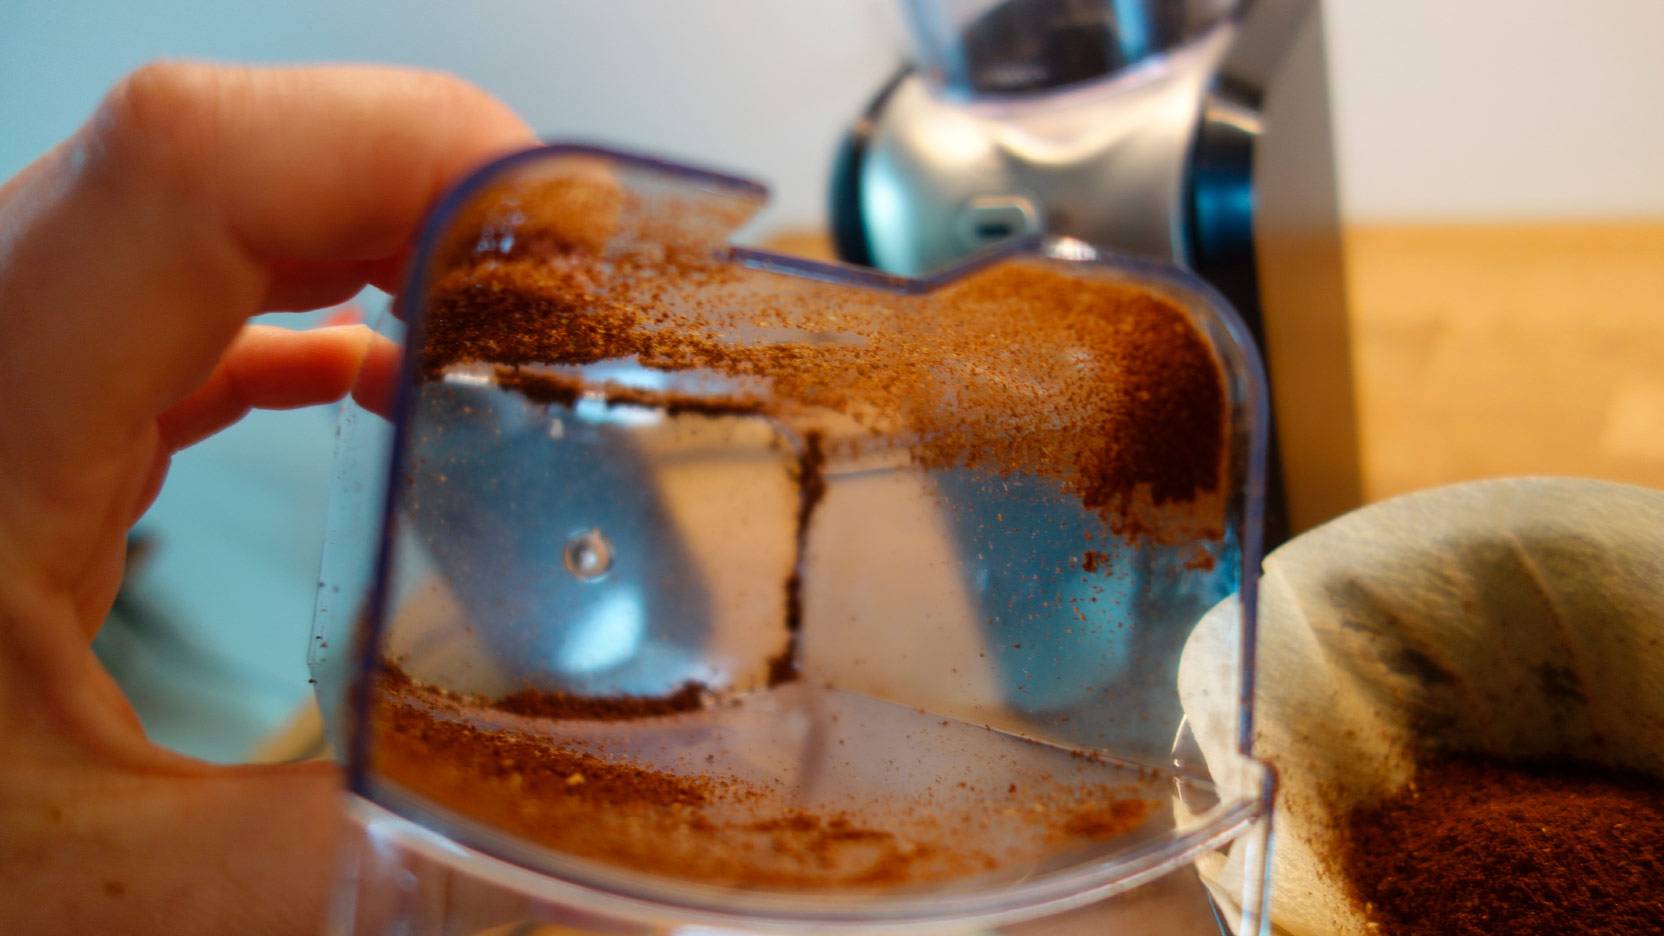 Billede af kaffe som klæber sig til beholderen med det kværnede kaffe